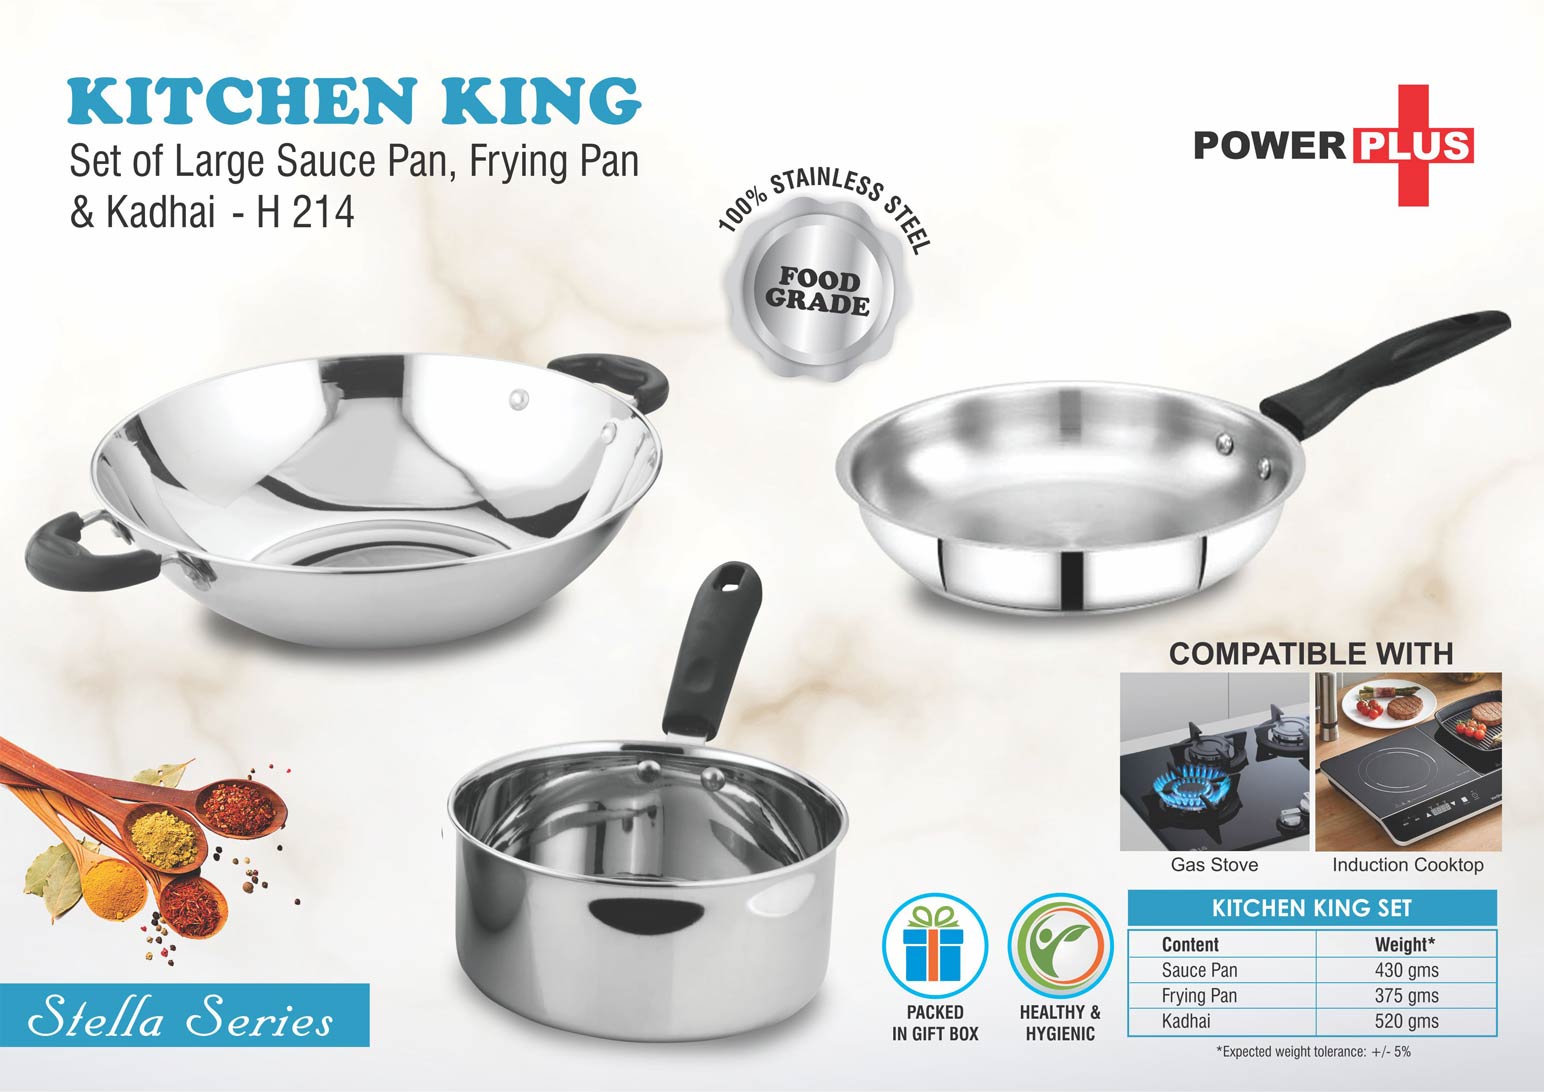 Kitchen King Set - Large Sauce Pan, Frying Pan and Kadhai in Gift Box - Stainless Steel - Silver